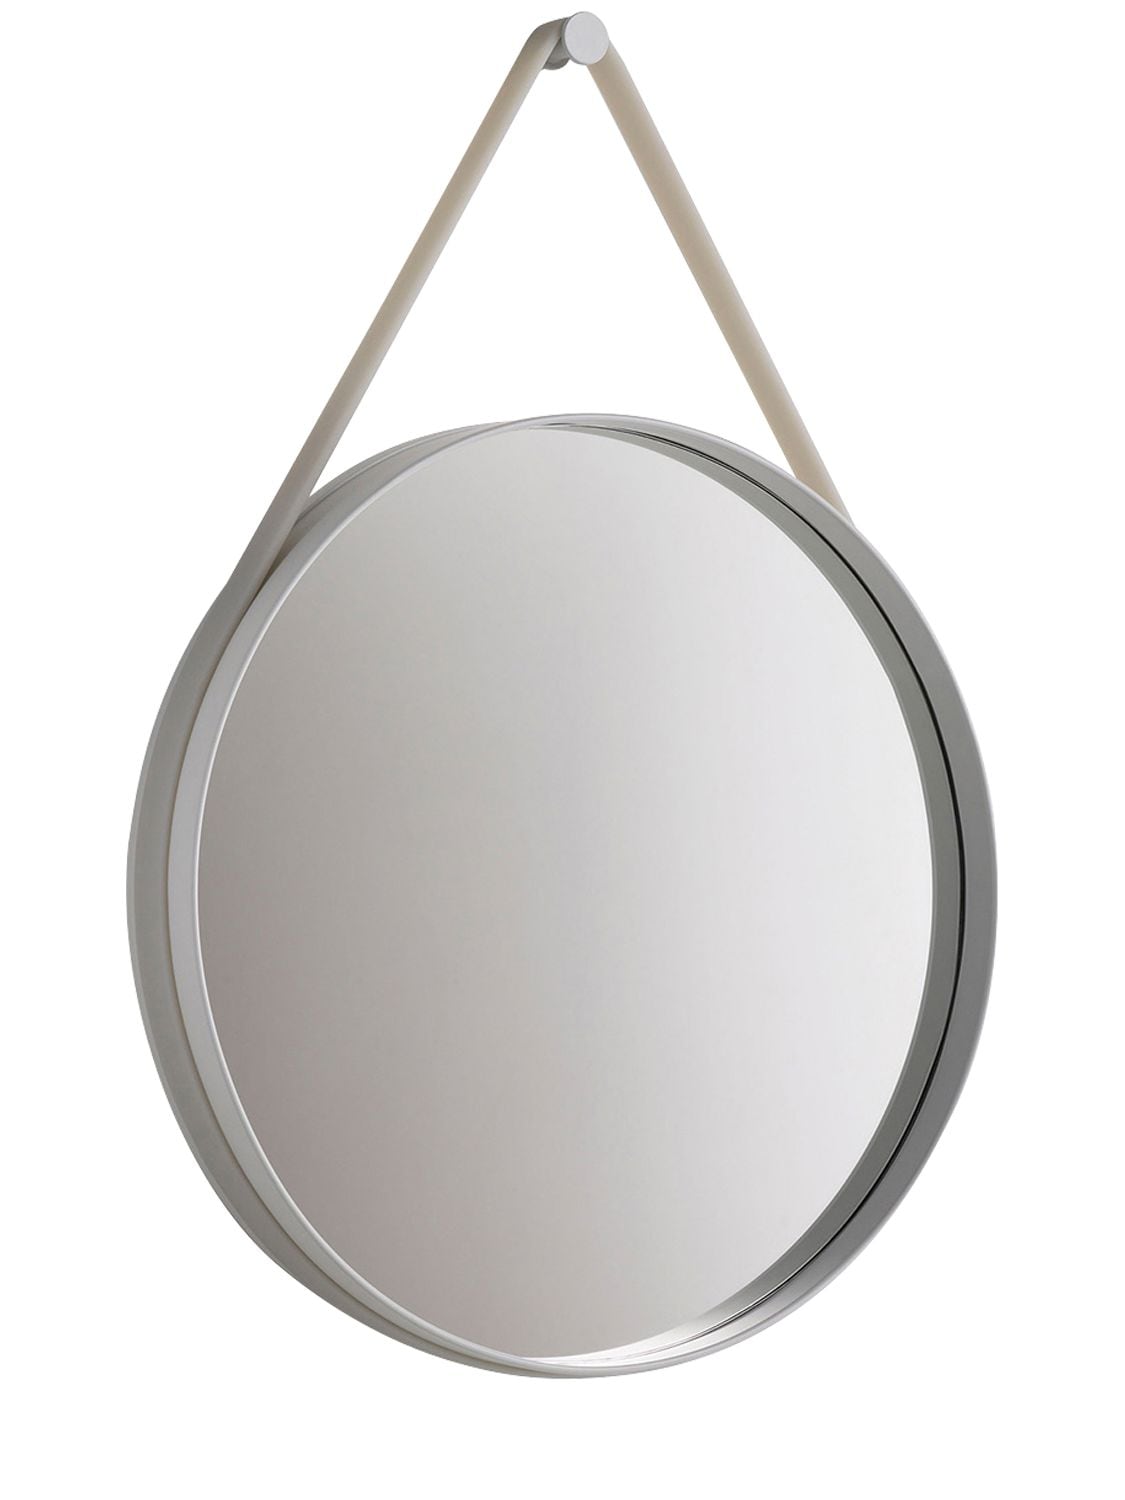 Hay Strap Mirror In Grey/grey